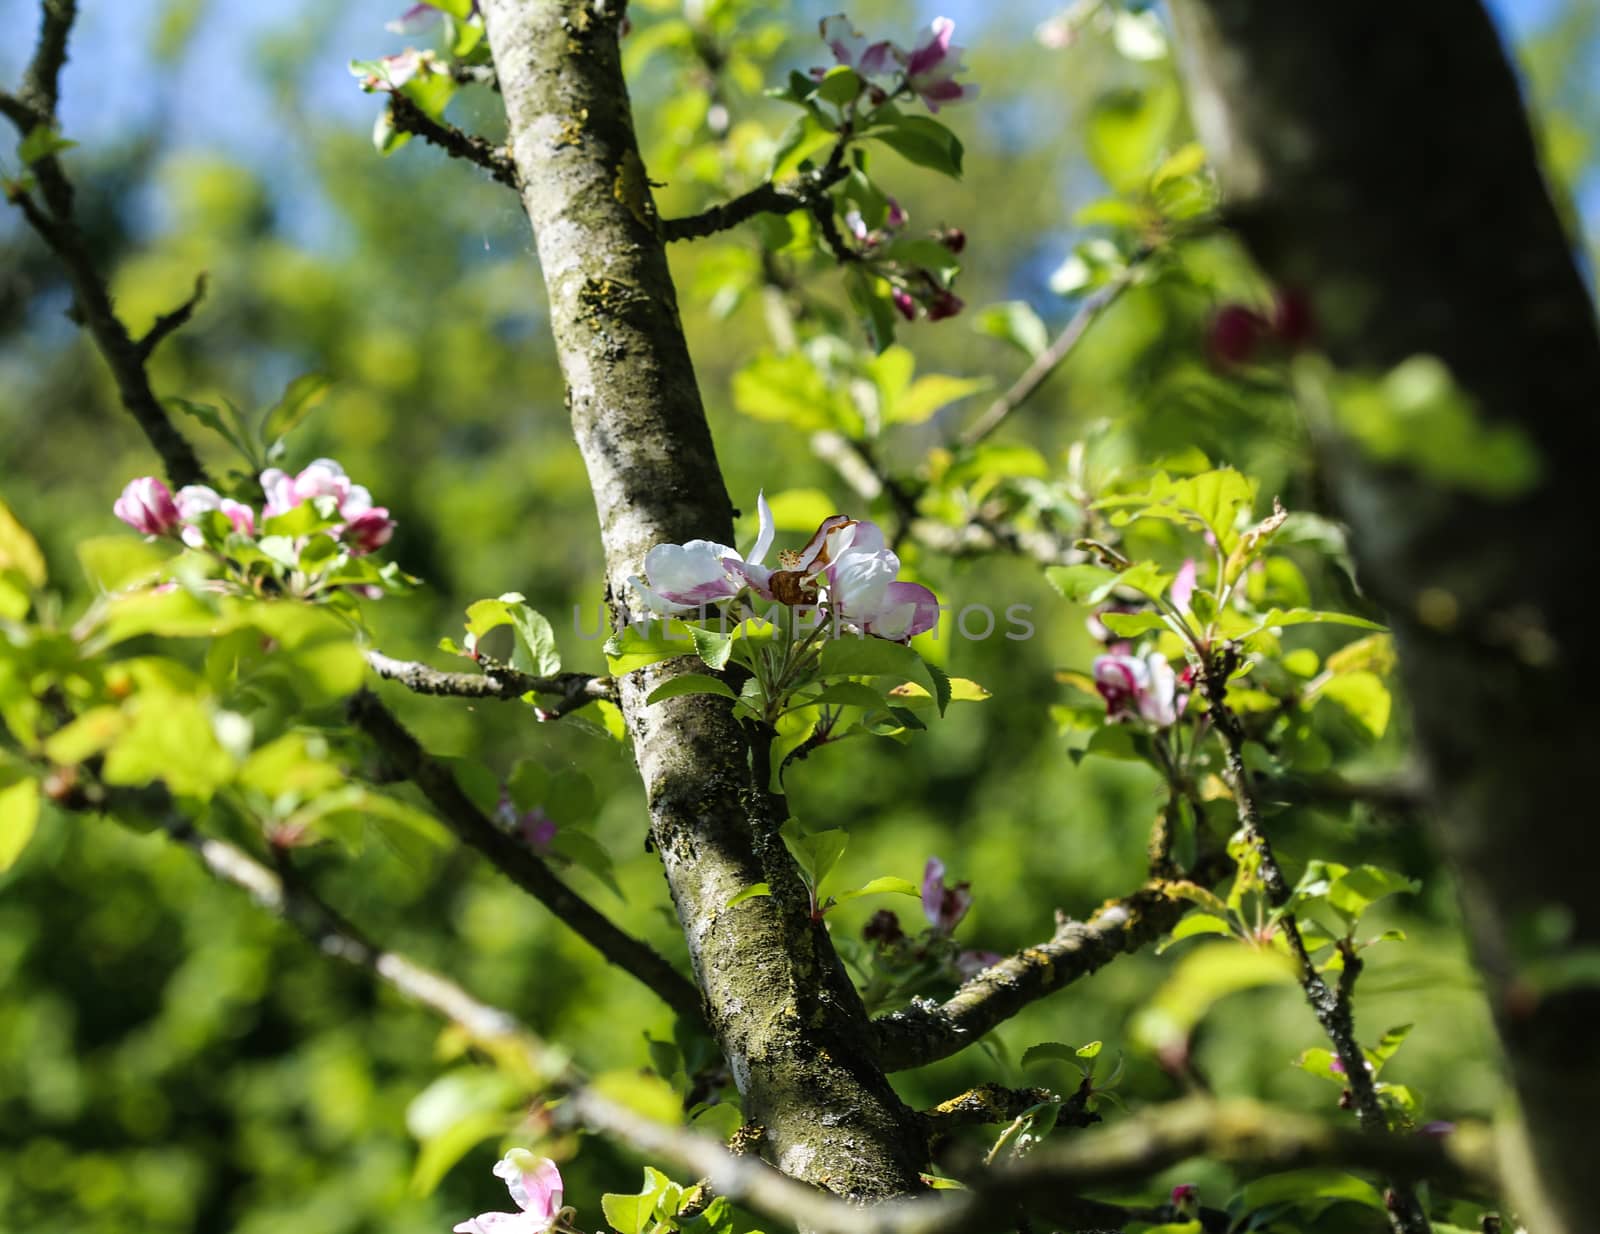 European crab apple (Malus sylvestris) tree flower, blooming in spring by michaelmeijer